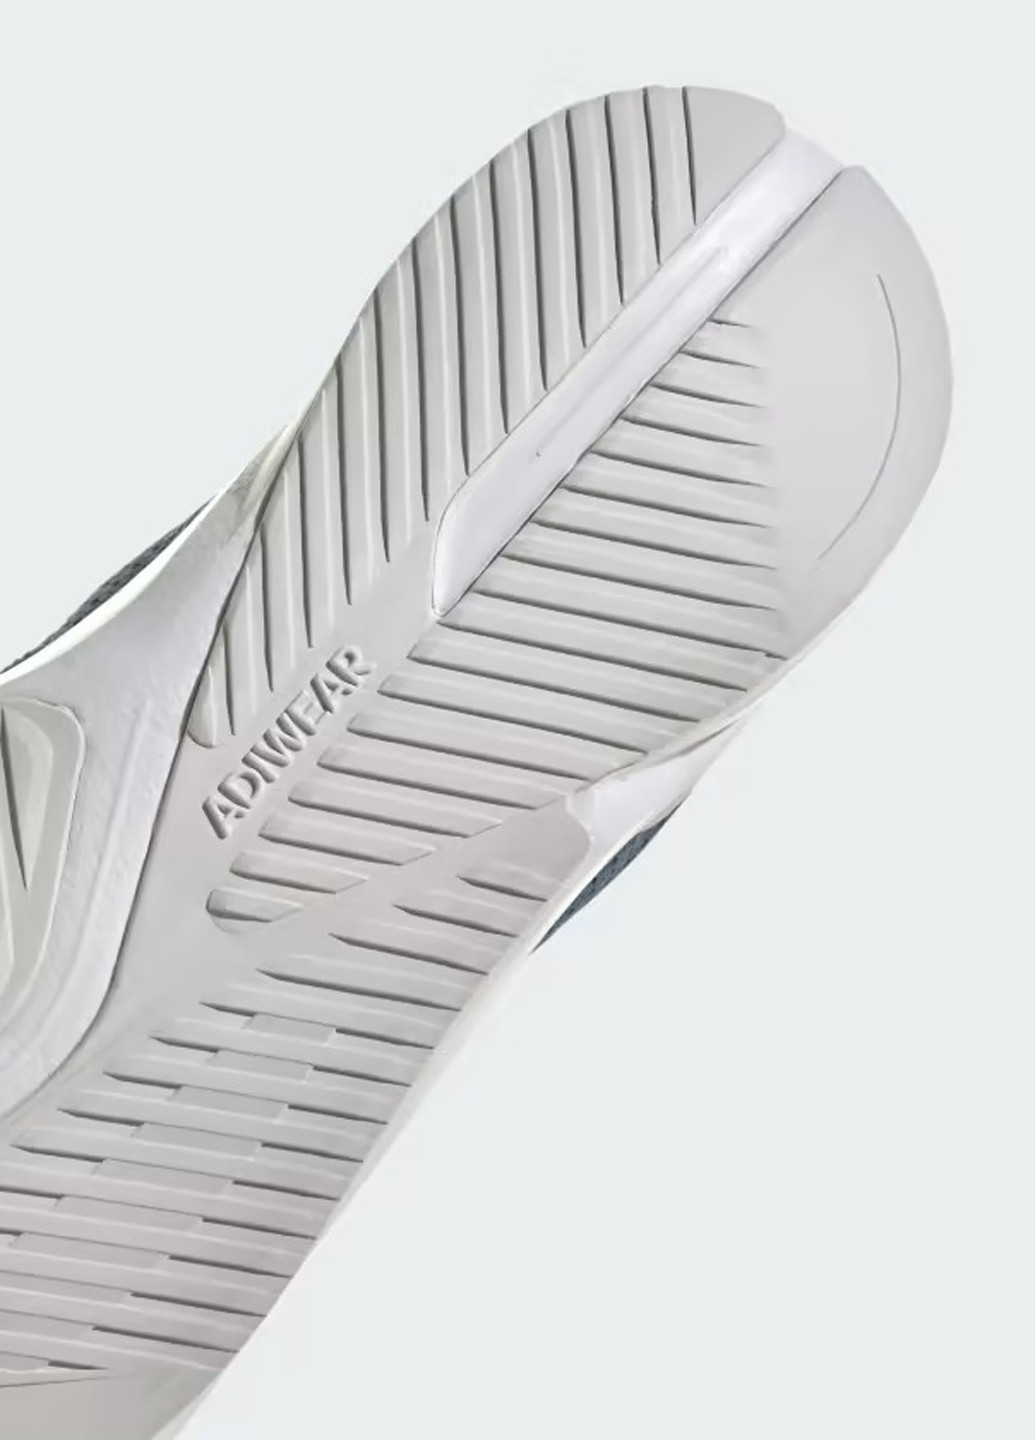 Сіро-синій осінні кросівки adidas